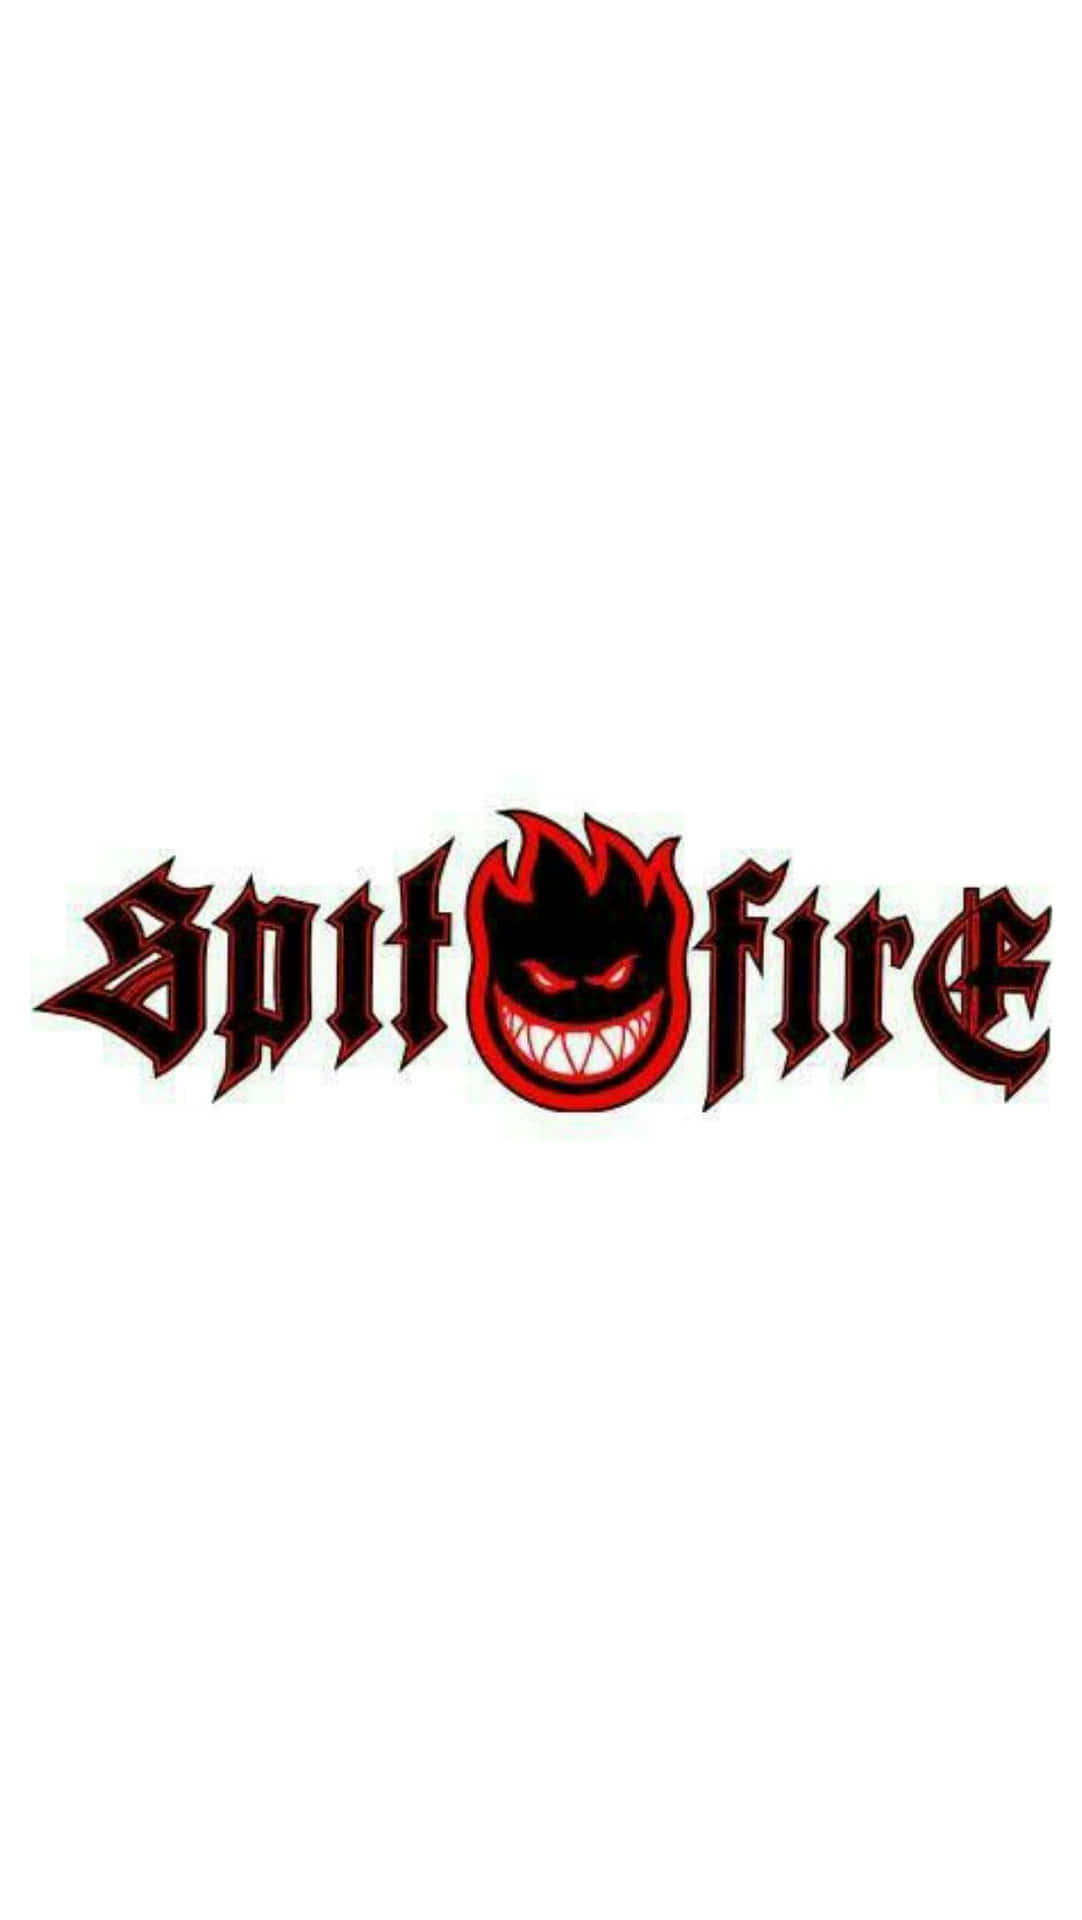 Spitfire Skate Logotype Wallpaper